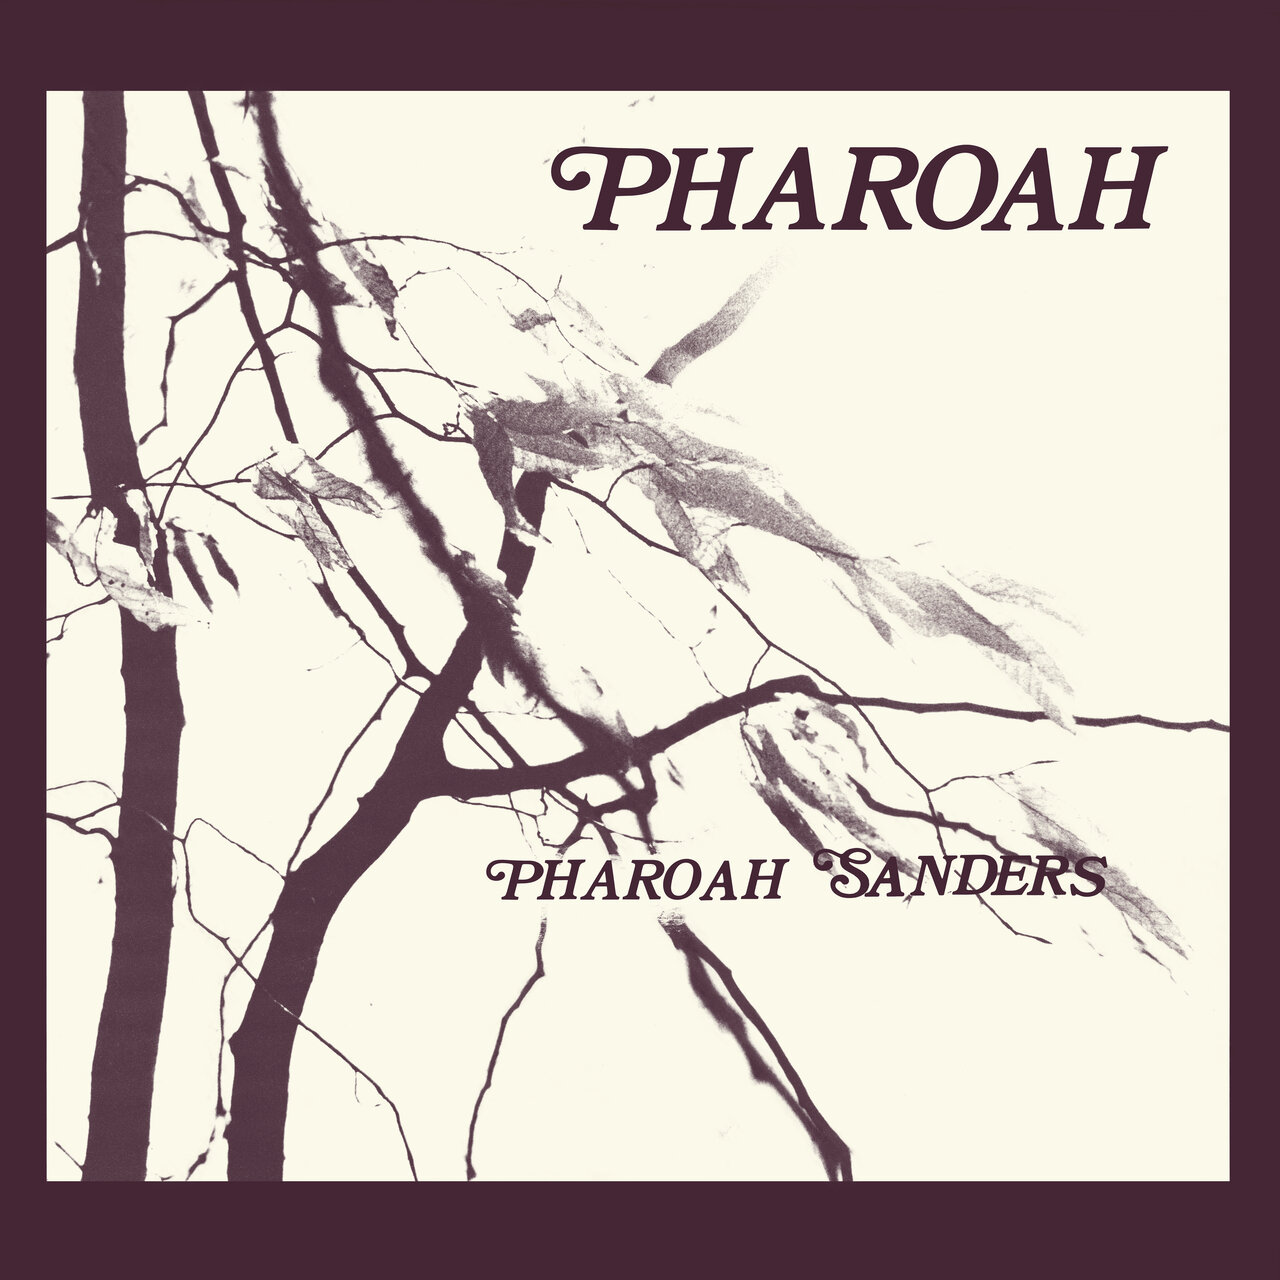 Pharoah Sanders 'Pharoah' (1977)